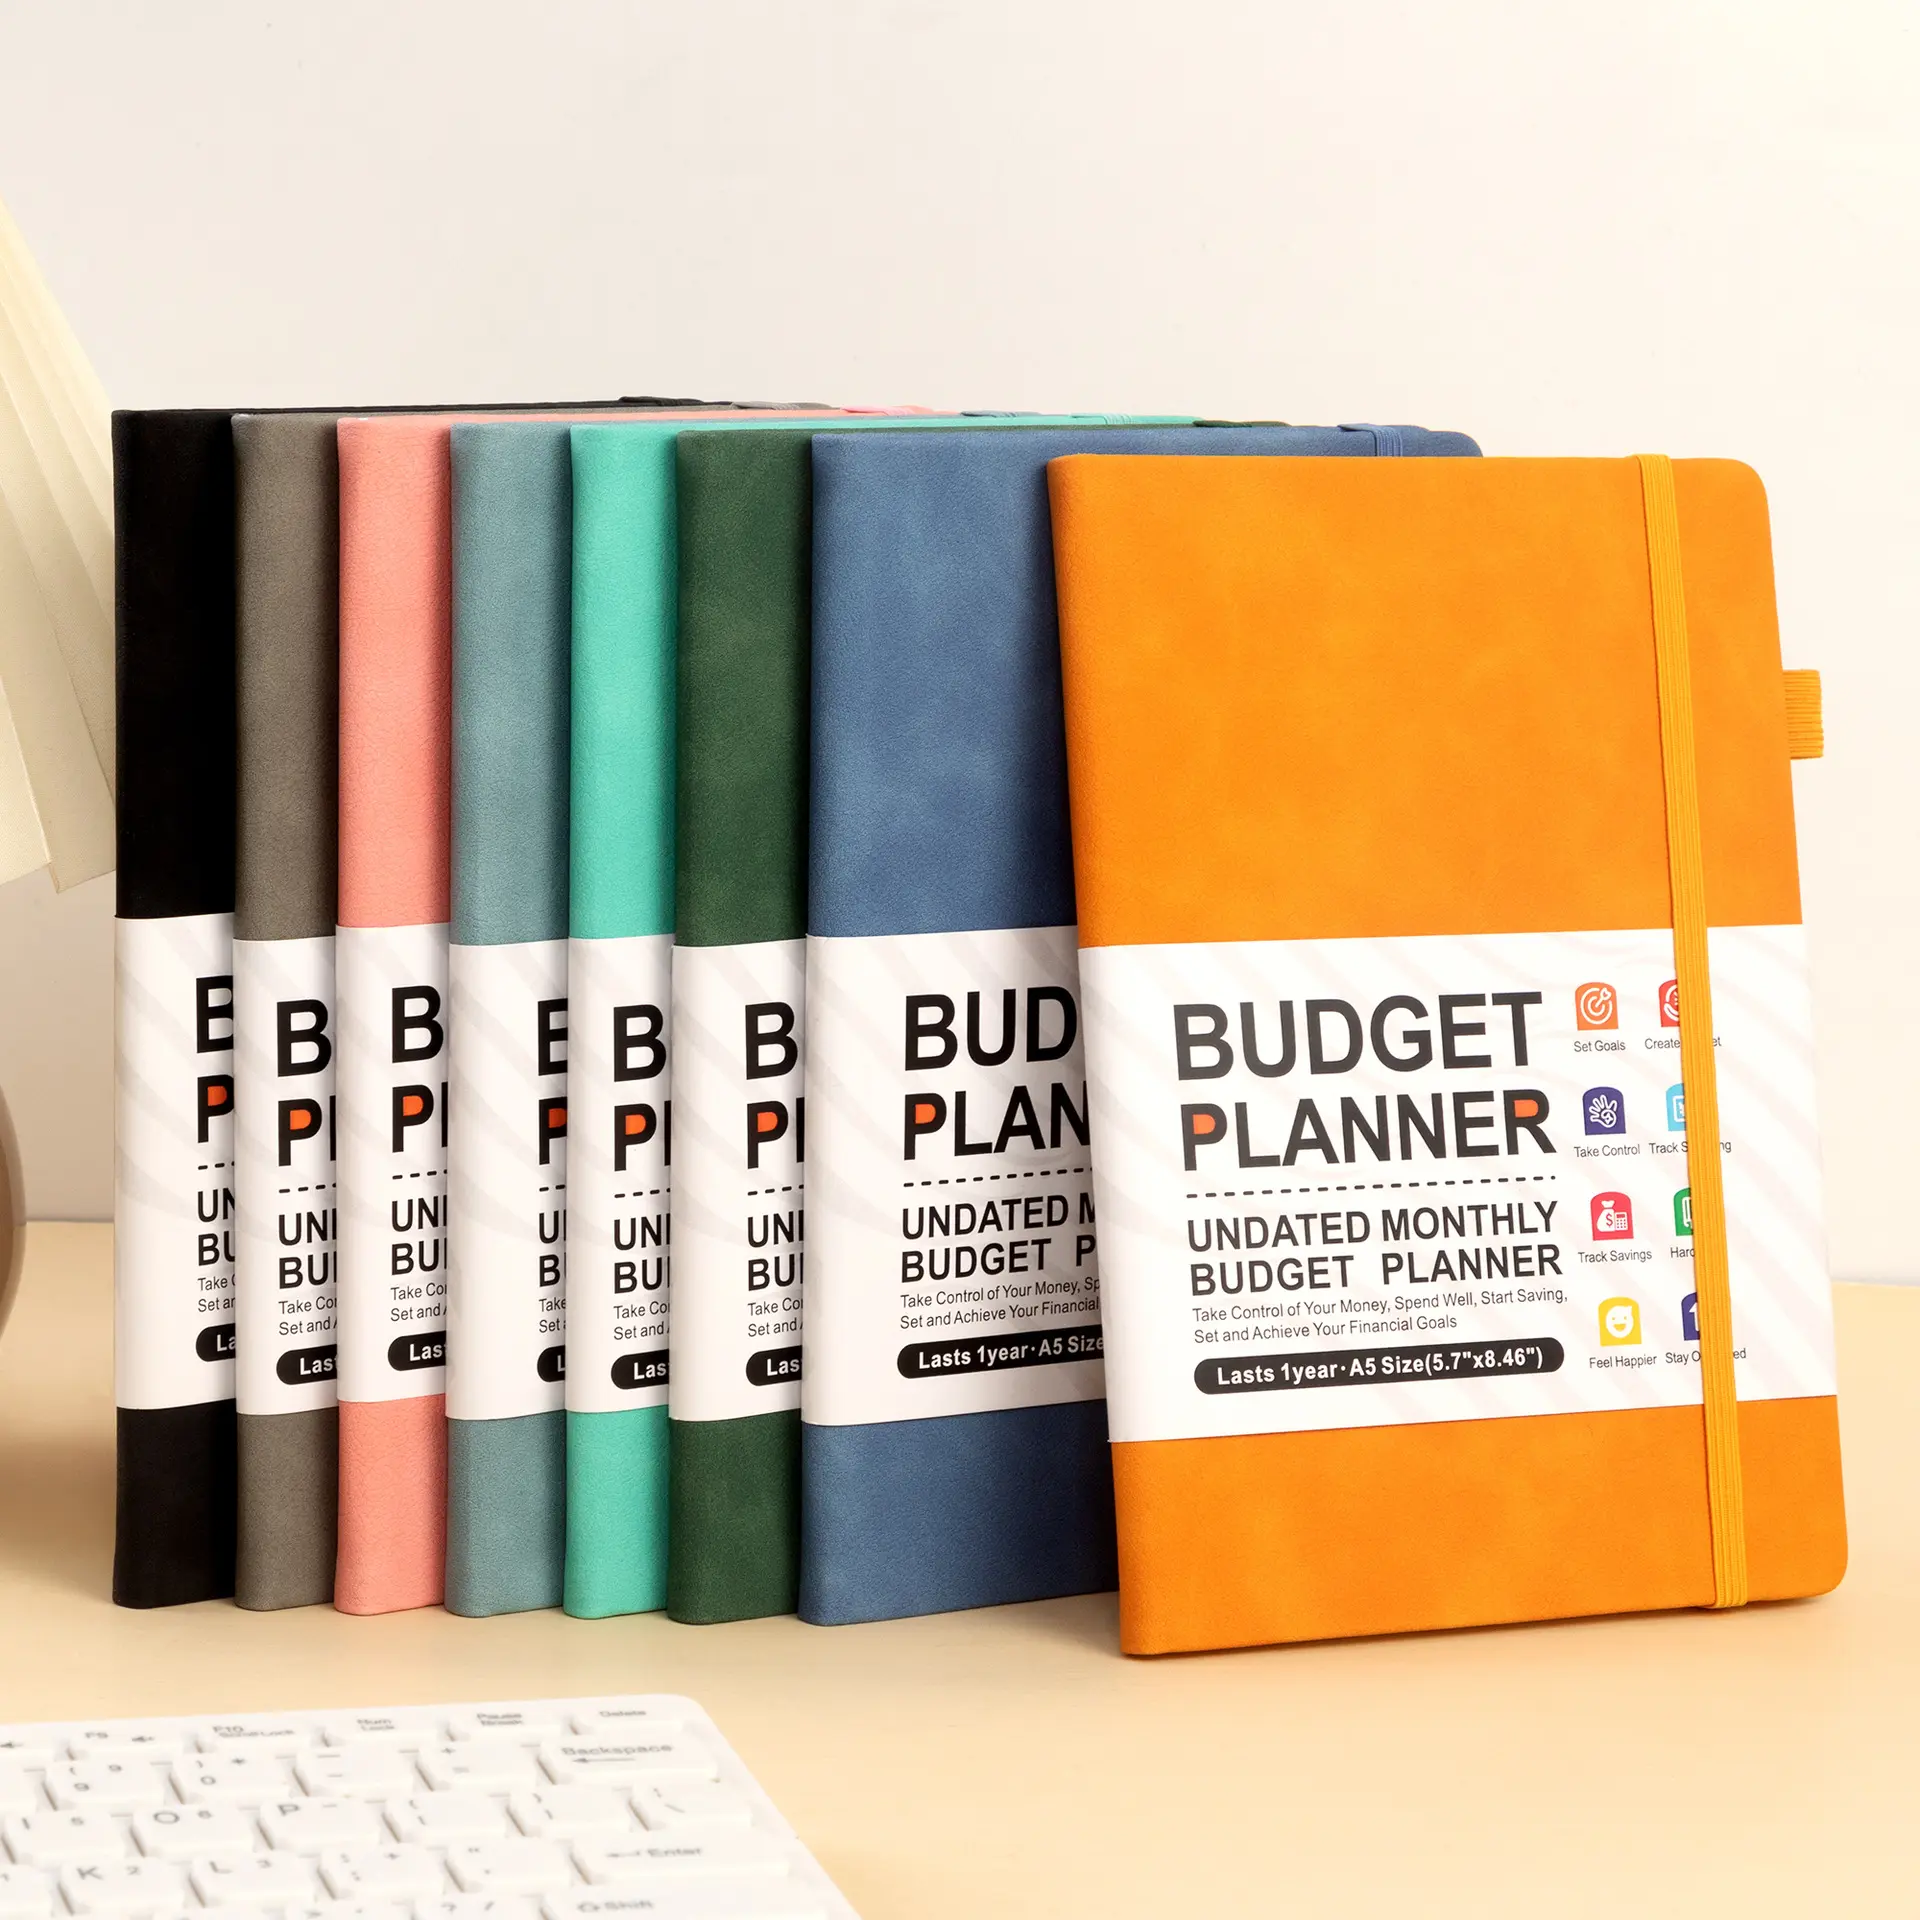 Diario di pianificazione finanziaria settimanale e mensile personalizzata della vita in pelle sintetica elastico A5 Budget Planner Journal con adesivi gratuiti